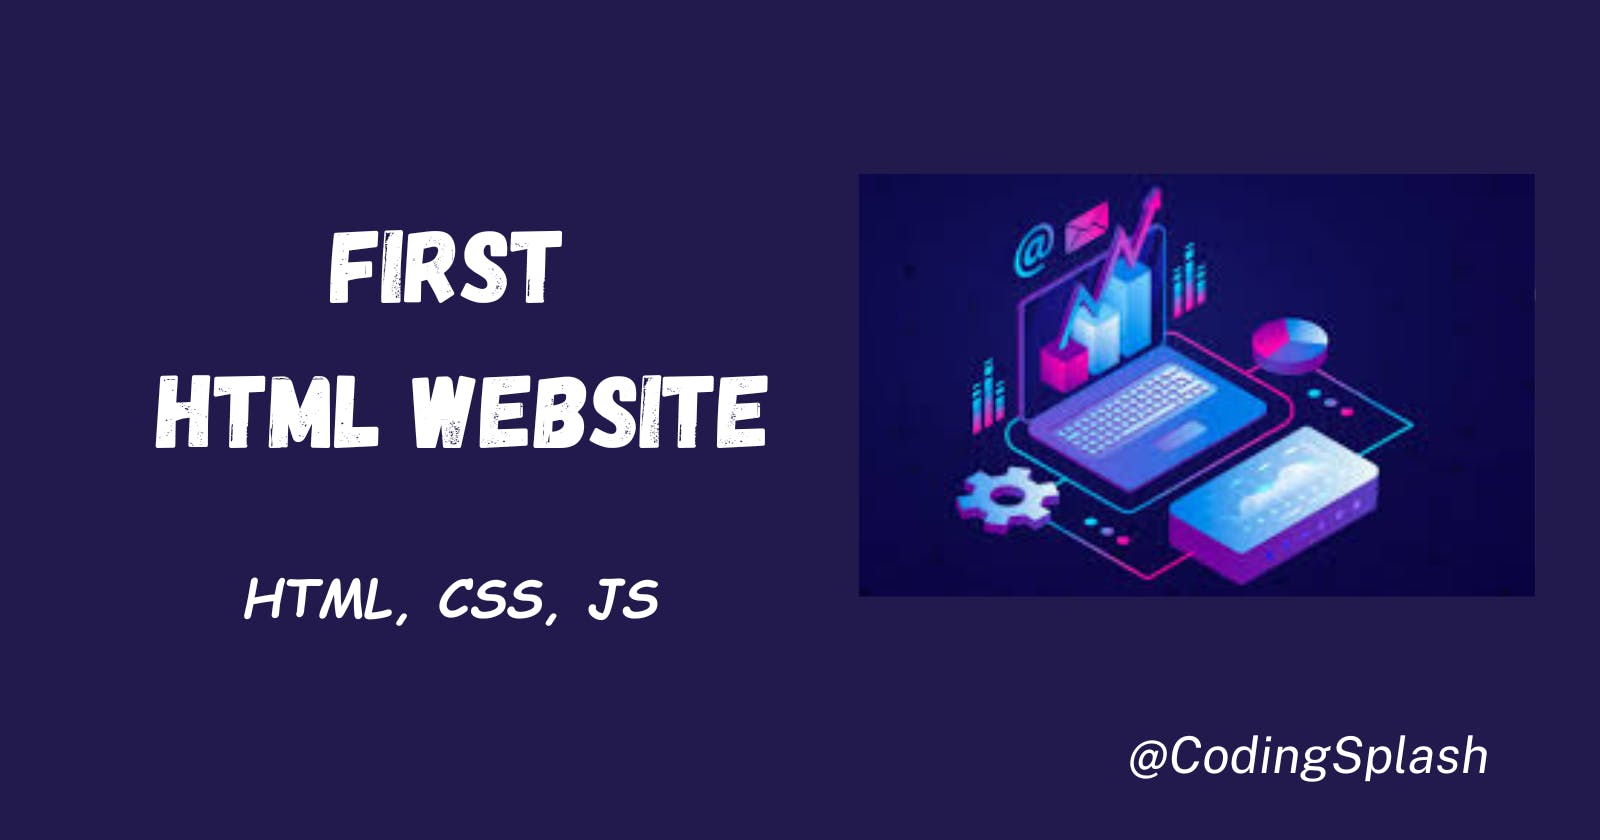 First HTML Website